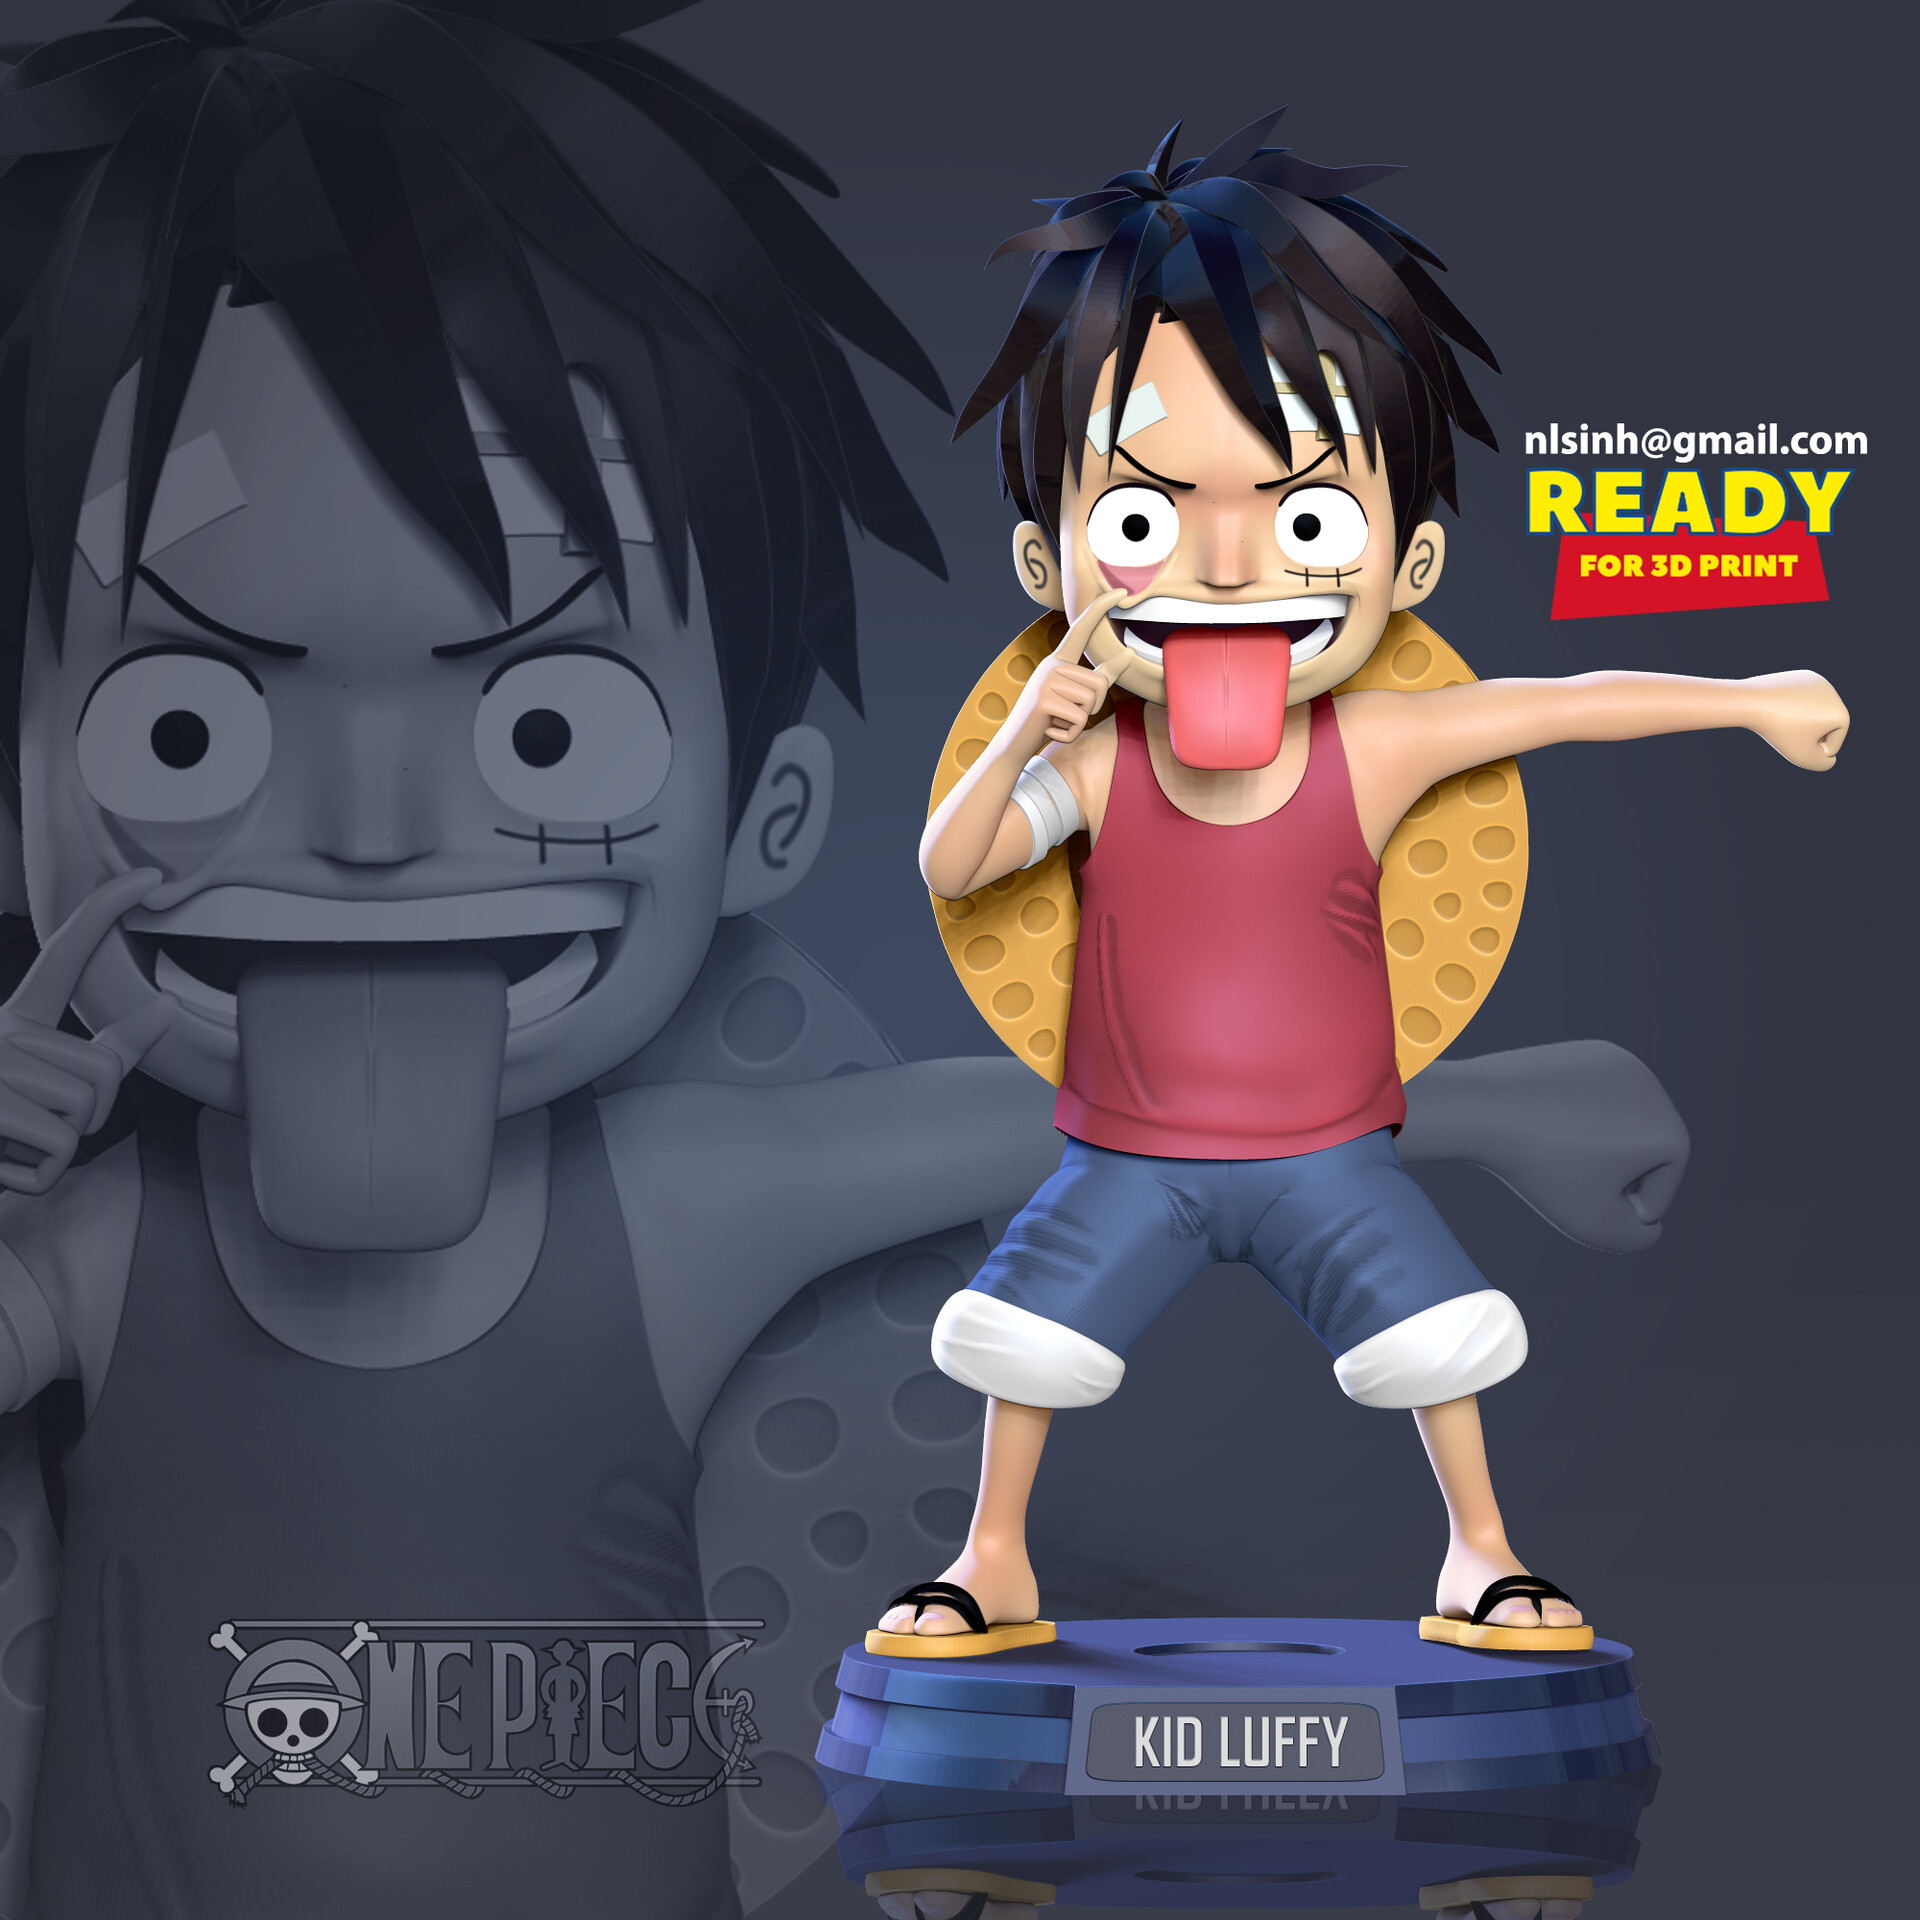 Kid Luffy by MandhelArt on DeviantArt